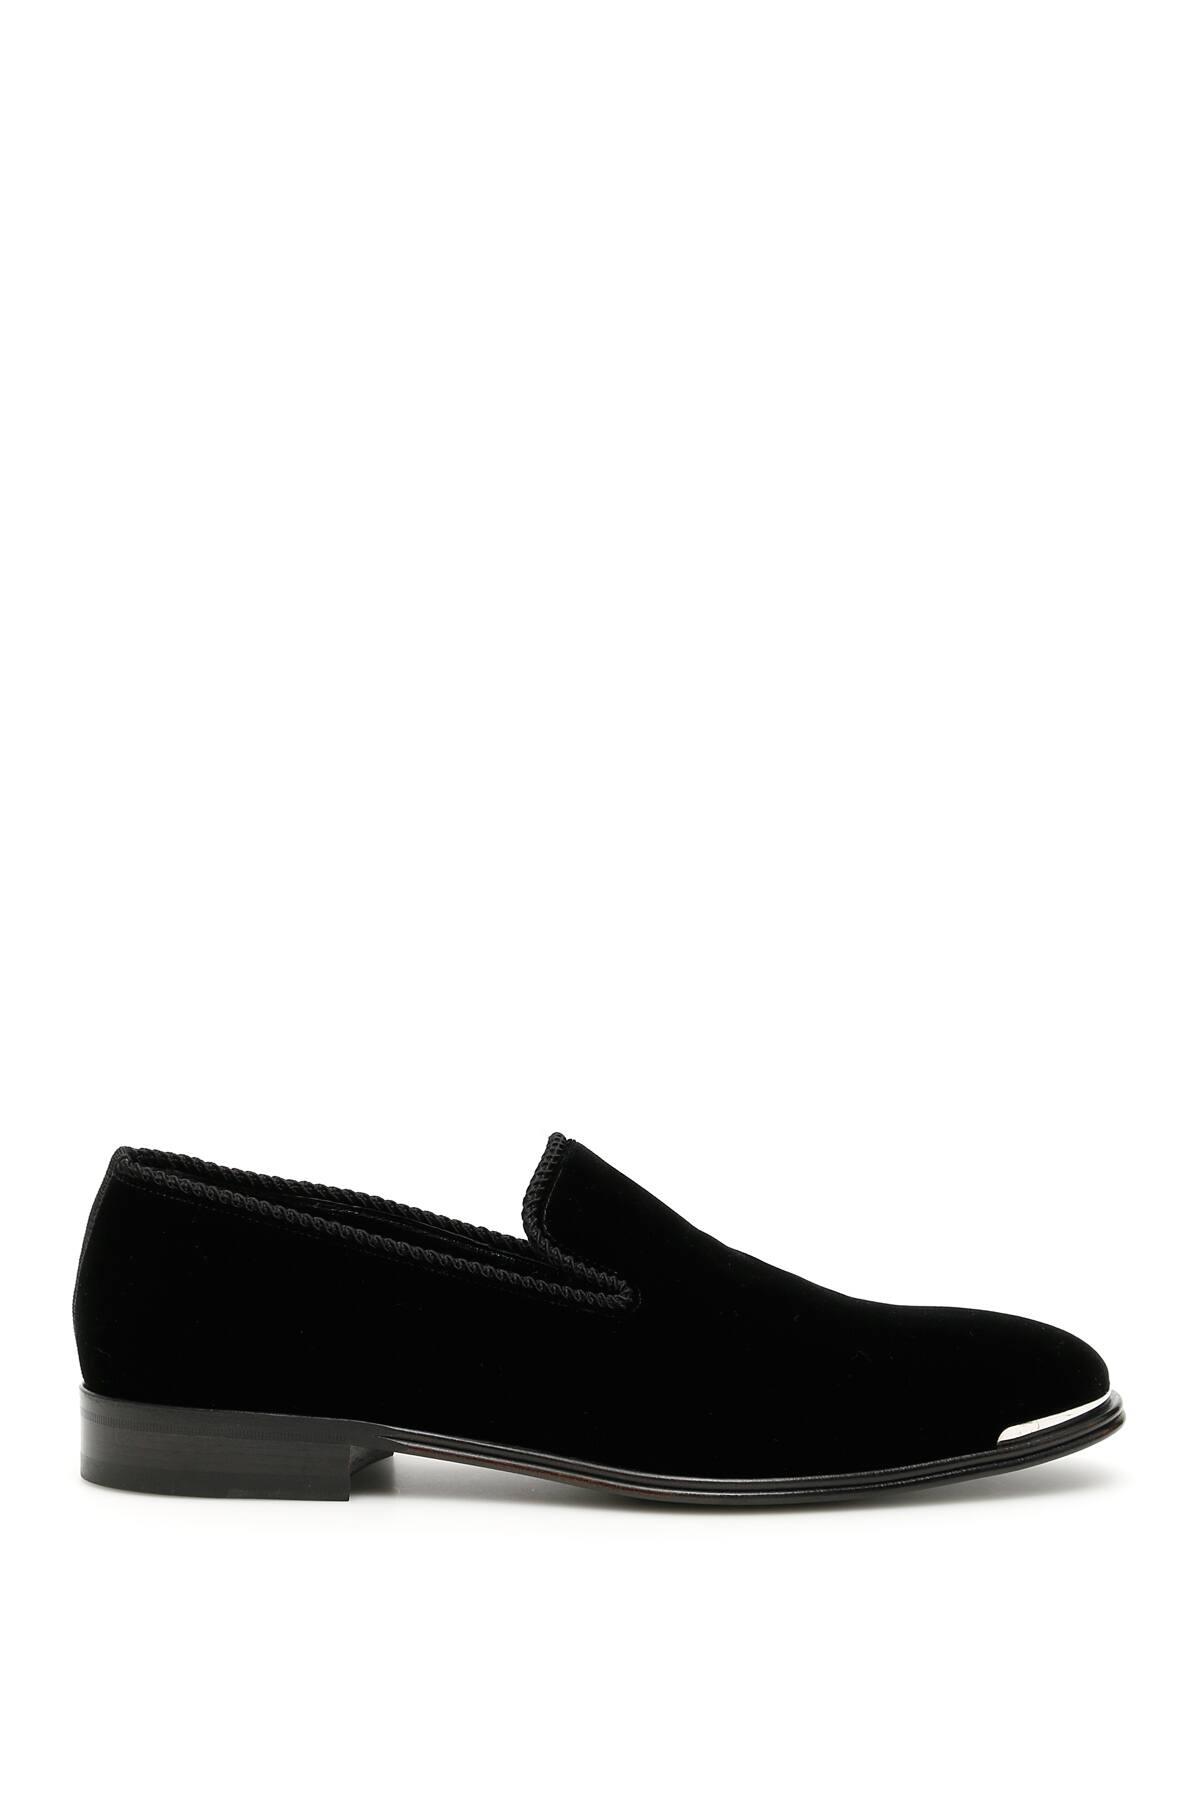 Alexander McQueen Black Velvet Loafers for Men - Save 18% - Lyst